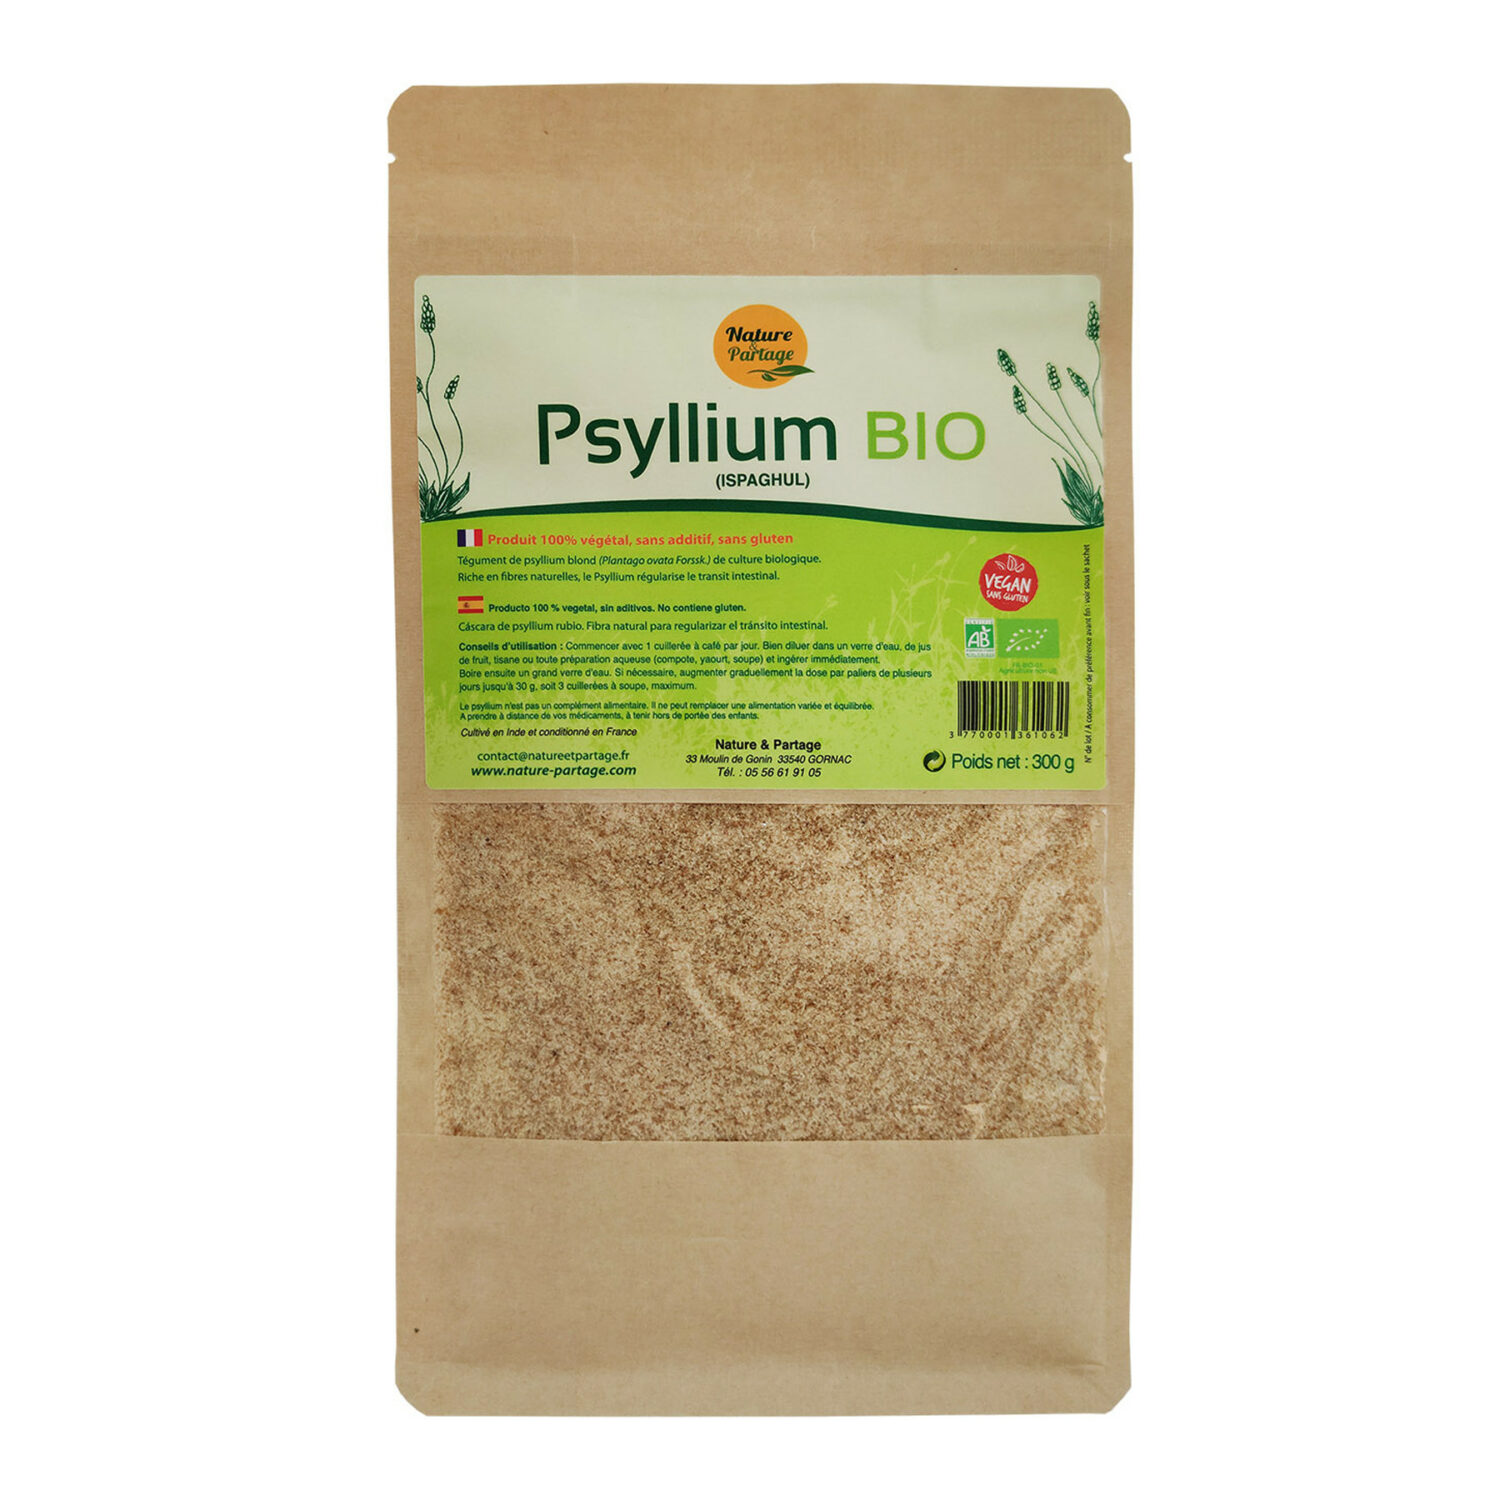 Псиллиум. Psyllium Bio 300 г. Organic Psyllium. Псиллиум растение. Псиллиум вкусвилл